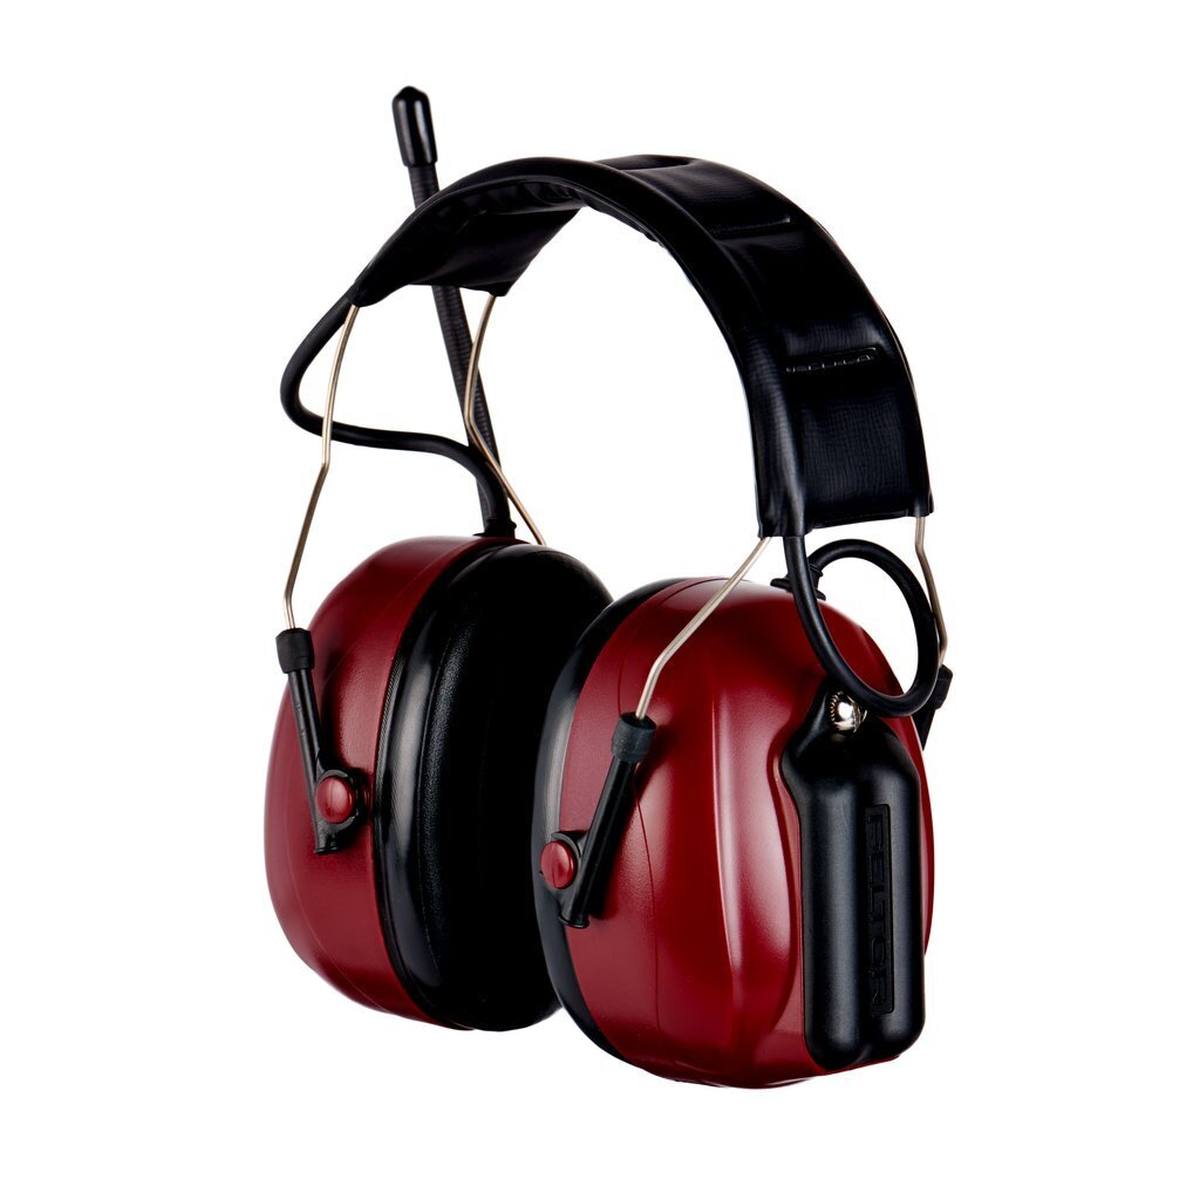 3M PELTOR Radio de protección auditiva Alert con diadema M2RX72A2